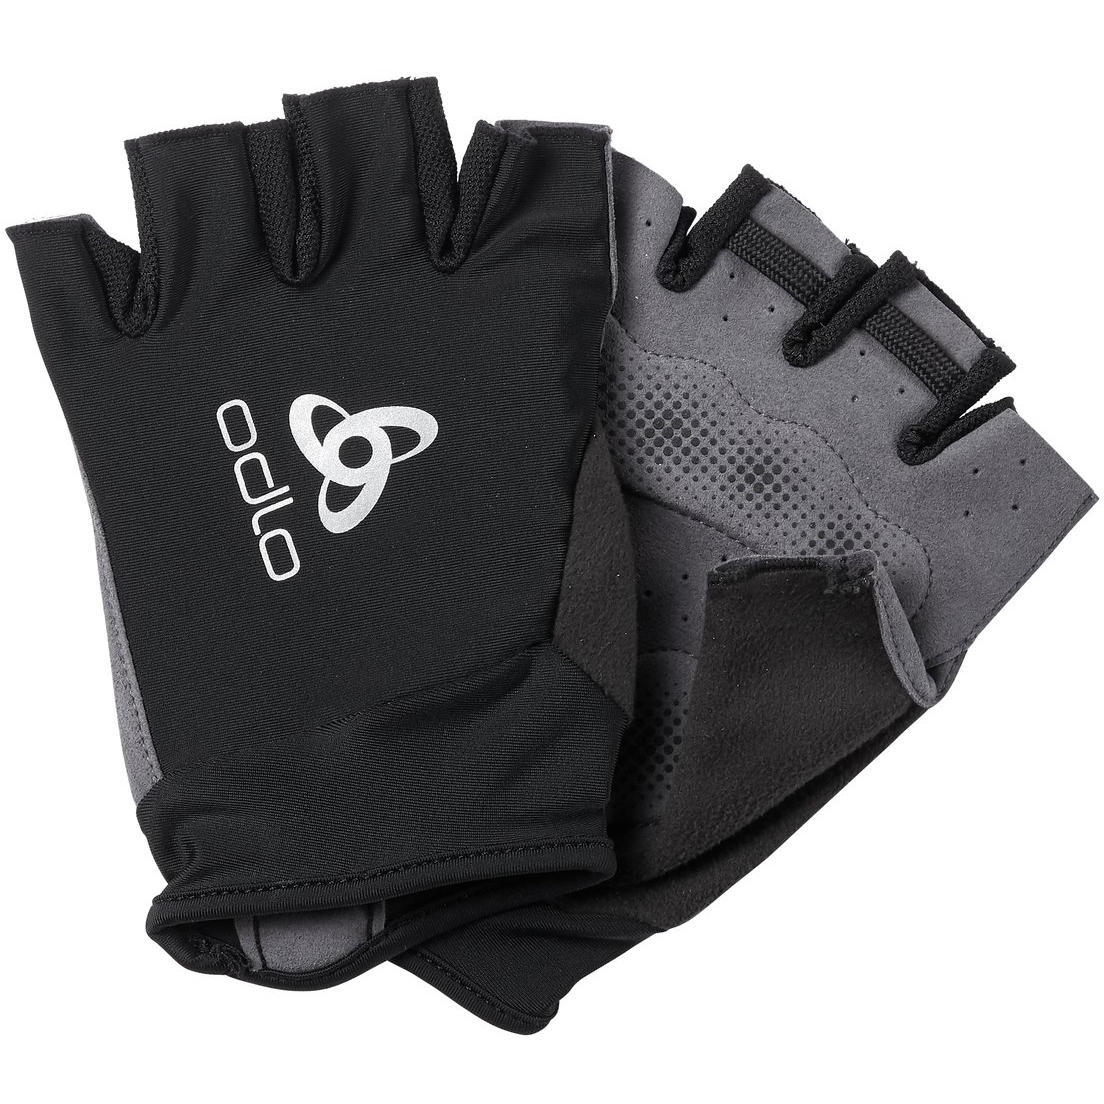 Produktbild von Odlo Active Rennradhandschuhe - schwarz